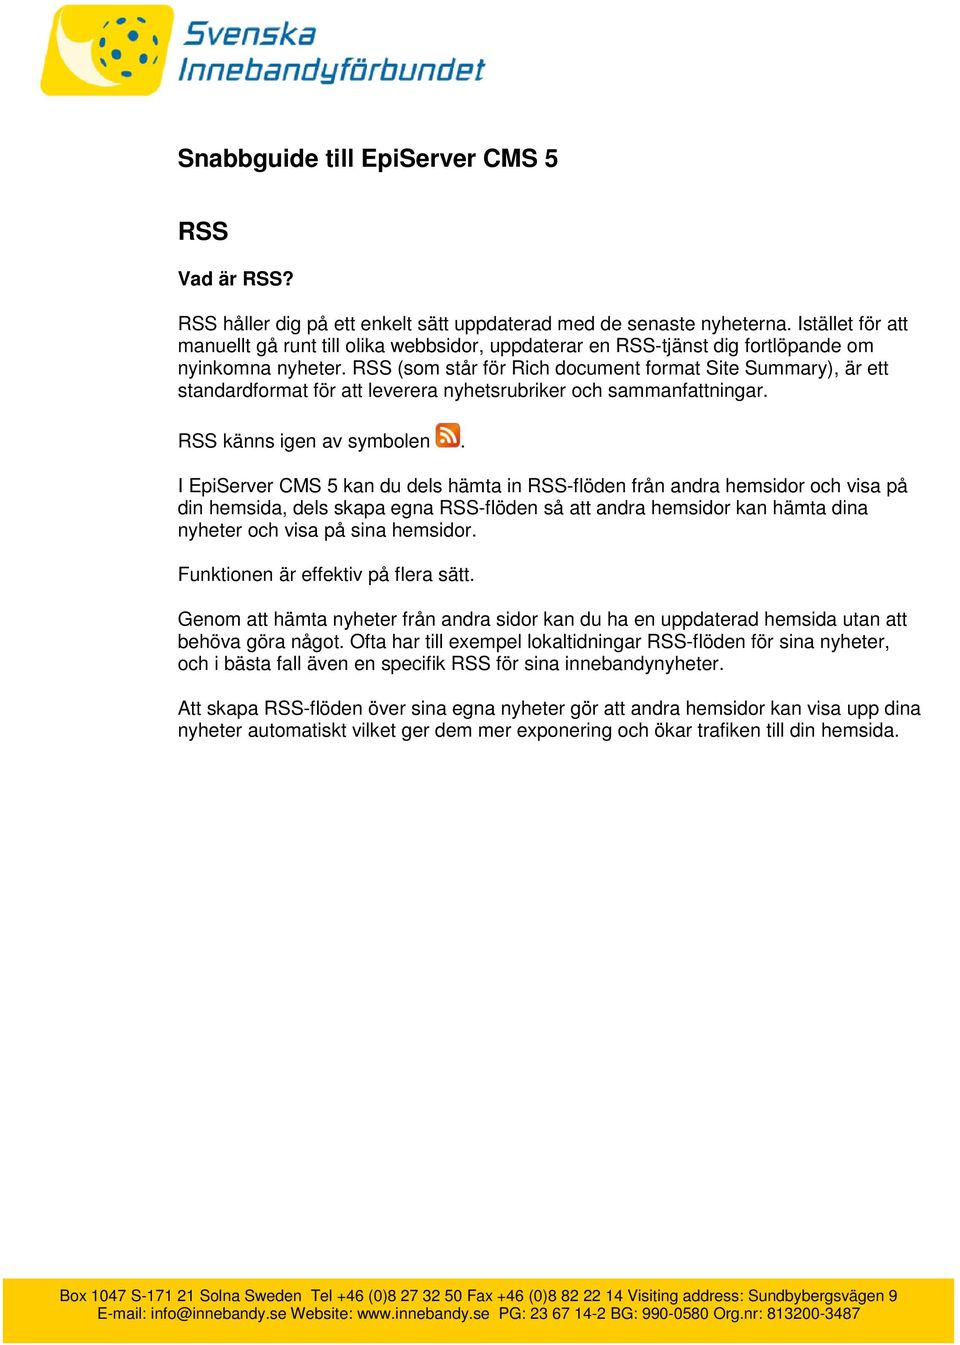 RSS (som står för Rich document format Site Summary), är ett standardformat för att leverera nyhetsrubriker och sammanfattningar. RSS känns igen av symbolen.